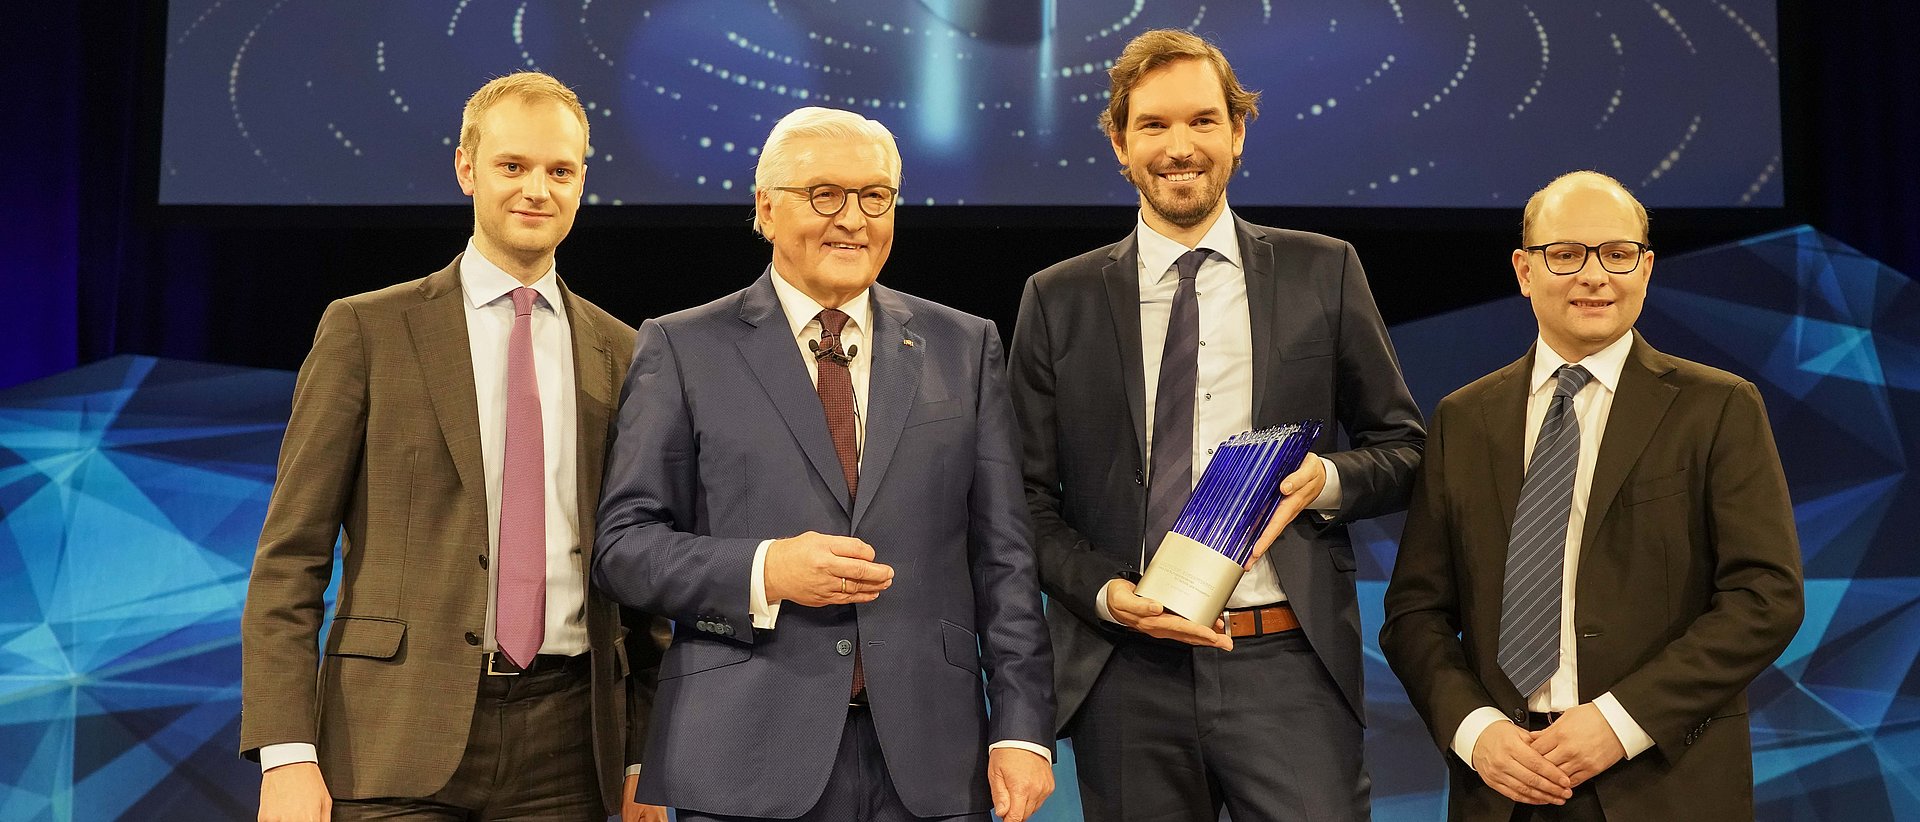 Bundespräsident Frank-Walter Steinmeier verleiht den Deutschen Zukunftspreis an Alexander Rinke, Martin Klenk und Bastian Nominacher.